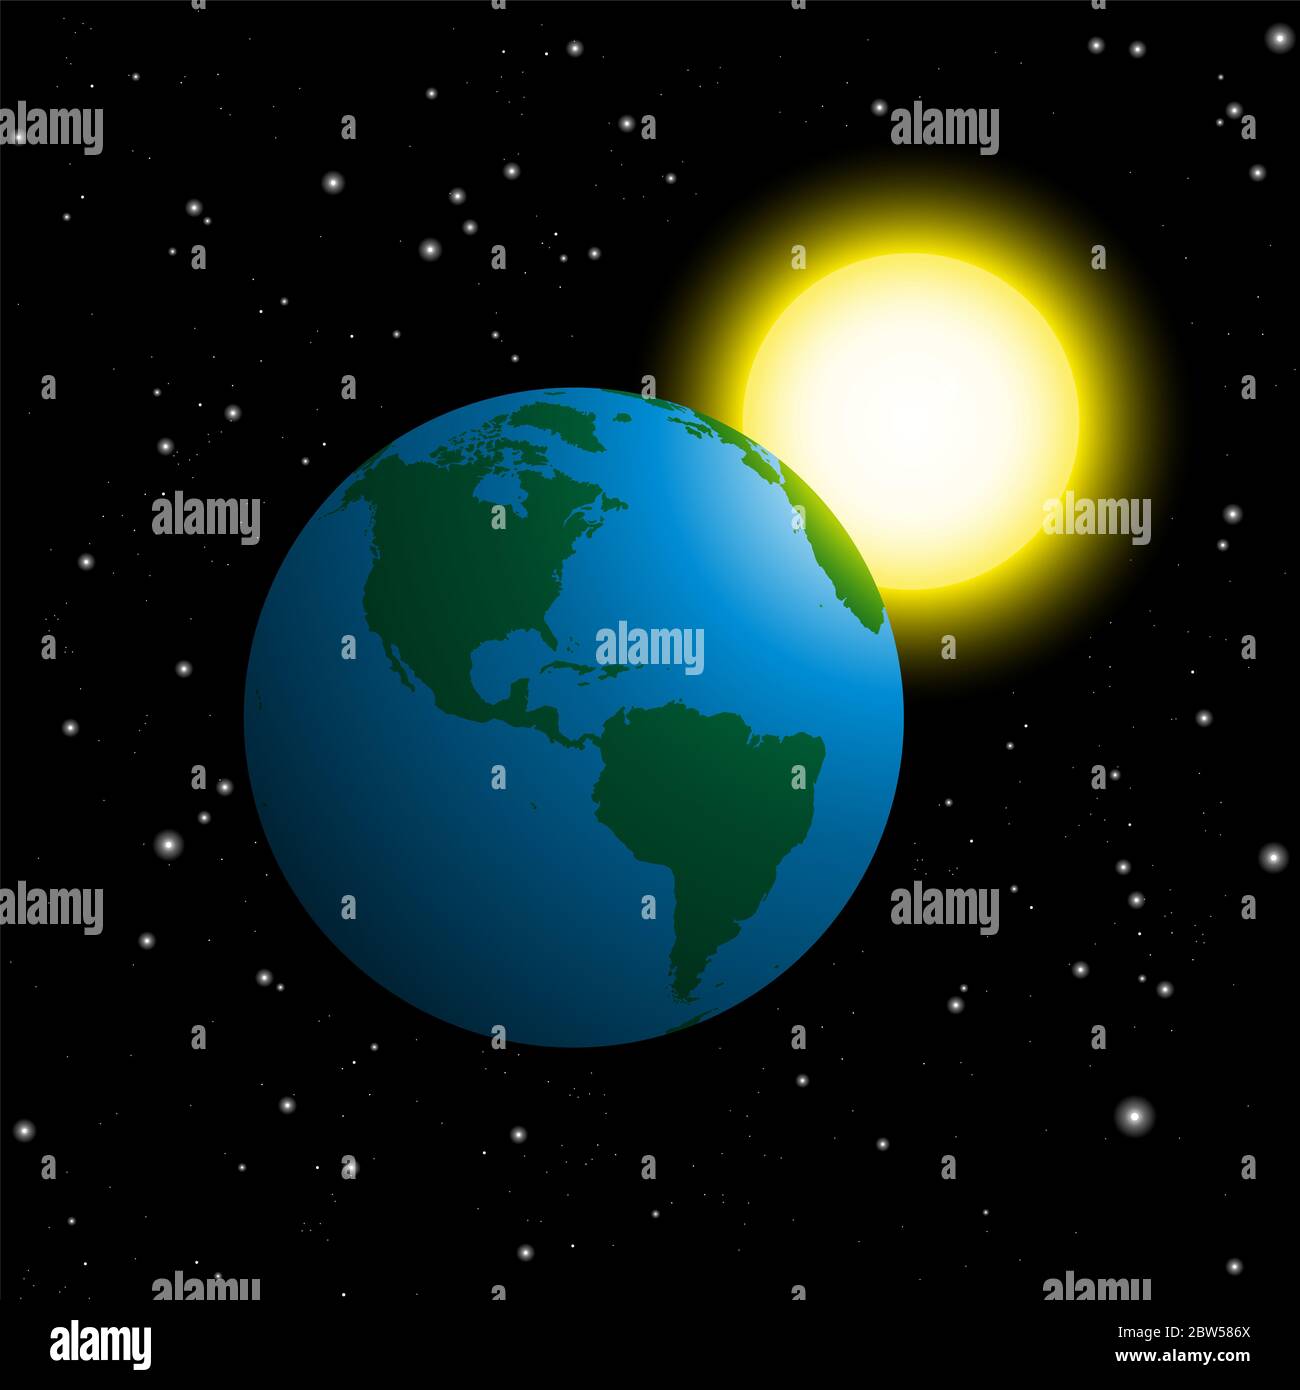 Planeta Tierra y sol en el espacio exterior - ilustración sobre fondo negro noche estrellada. Foto de stock